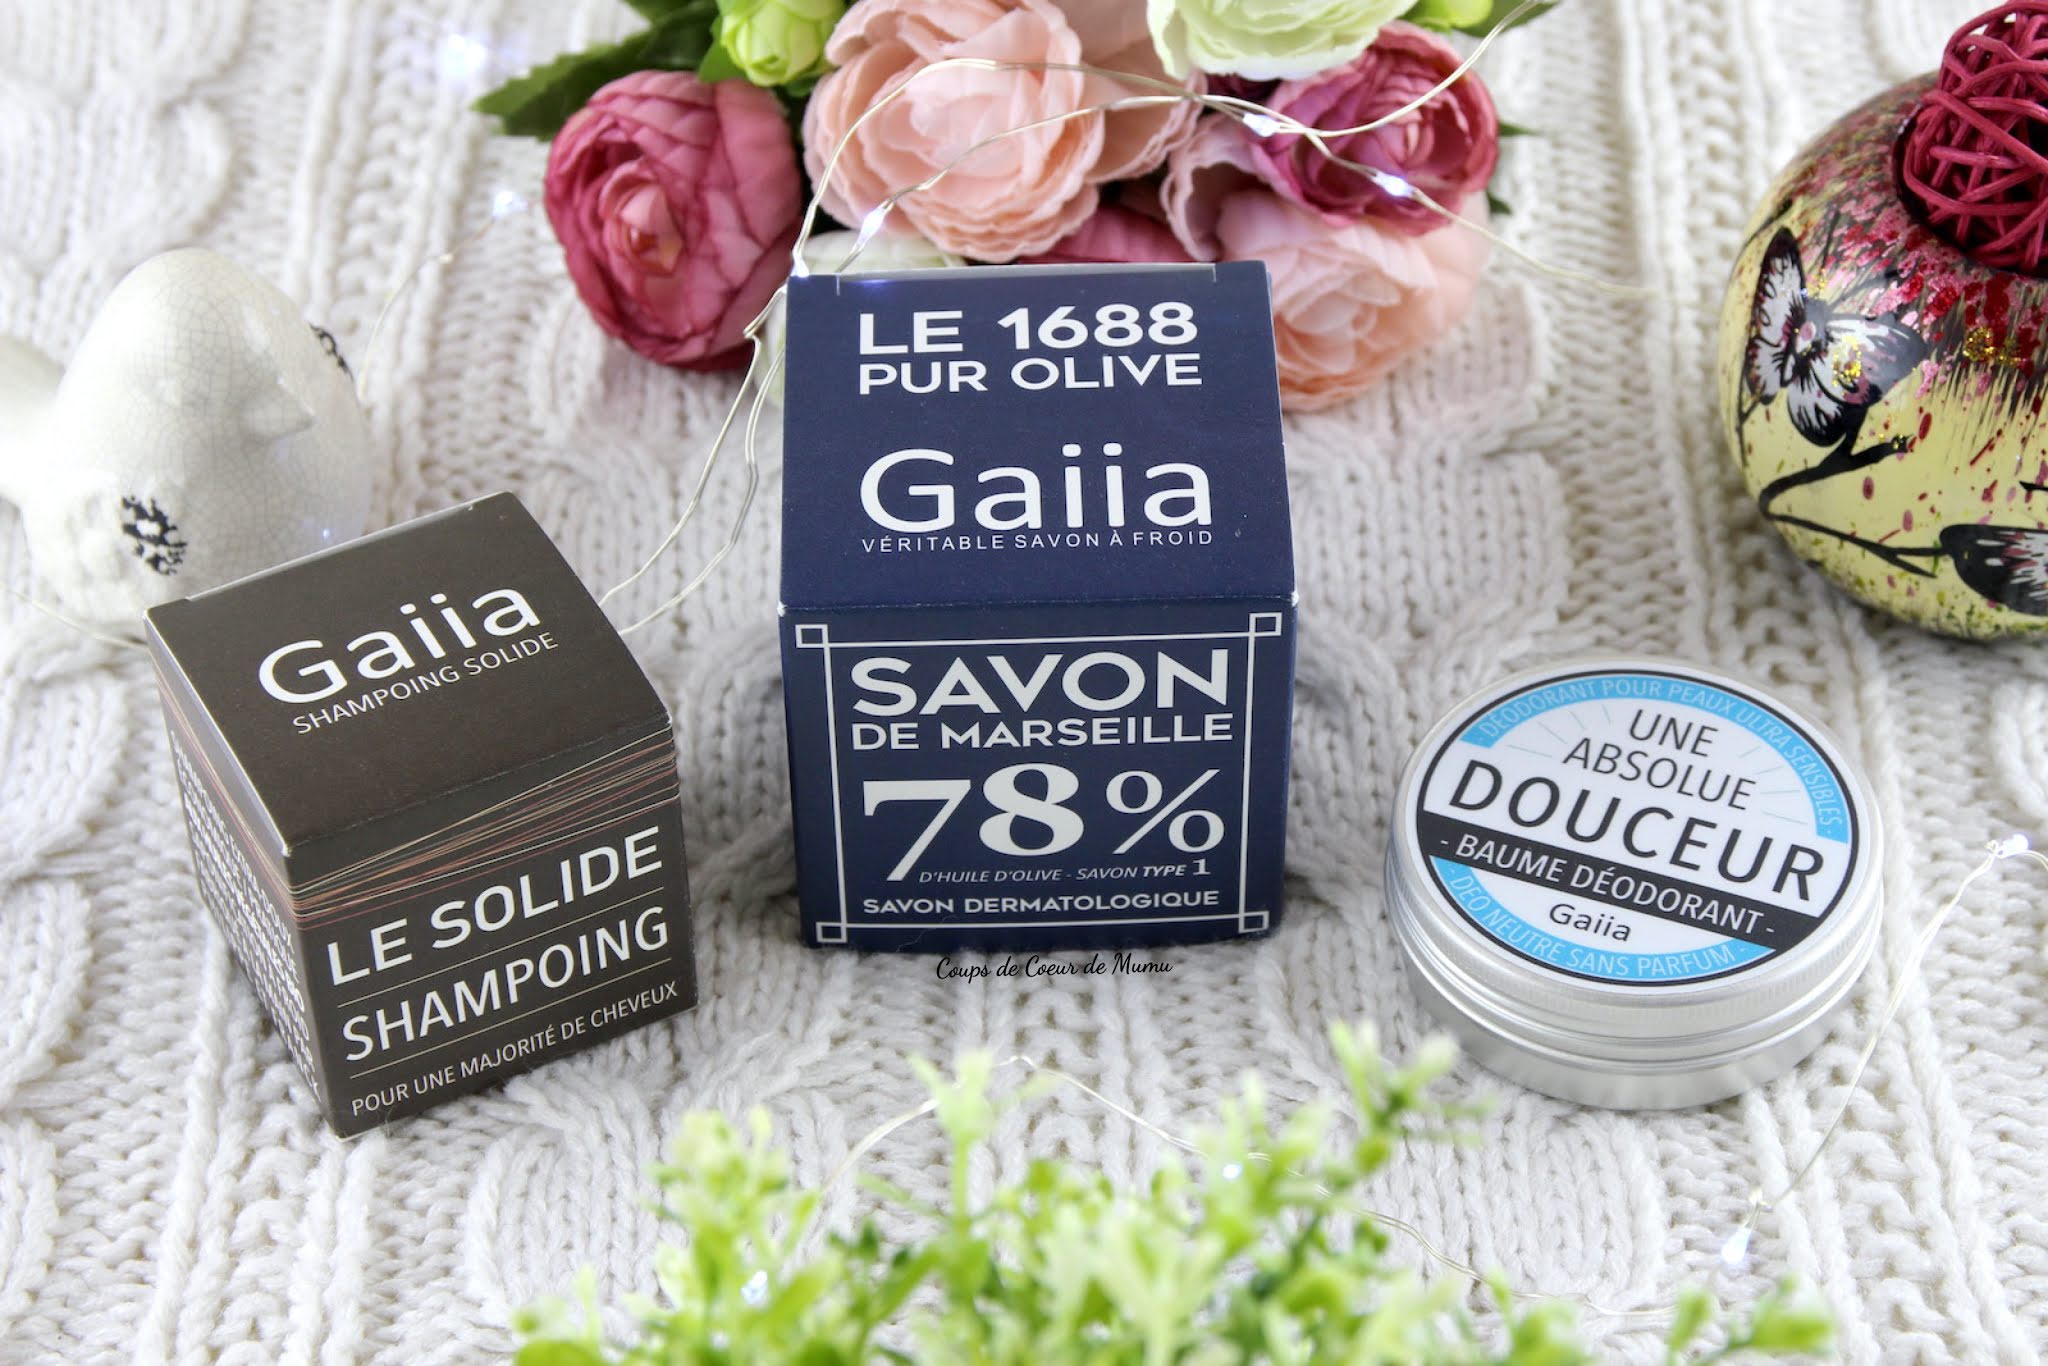 Mon avis détaillé sur les nouveautés de la Savonnerie Gaiia : Shampooing Solide, Savon de Marseille et Baume Déodorant.